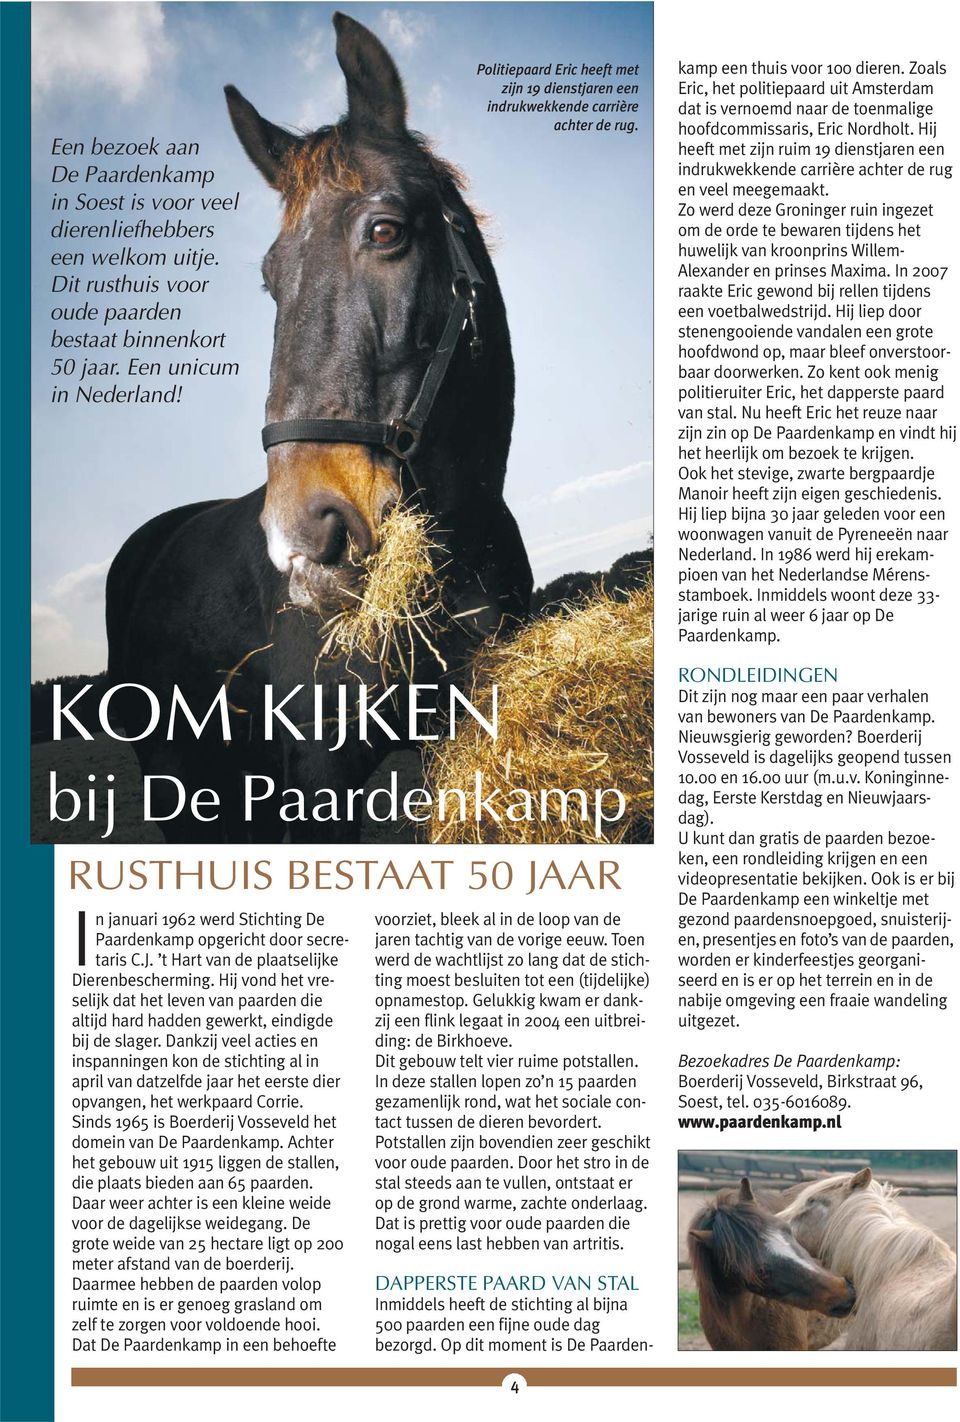 Op dit moment is De Paardenkamp een thuis voor 100 dieren. Zoals Eric, het politiepaard uit Amsterdam dat is vernoemd naar de toenmalige hoofdcommissaris, Eric Nordholt.